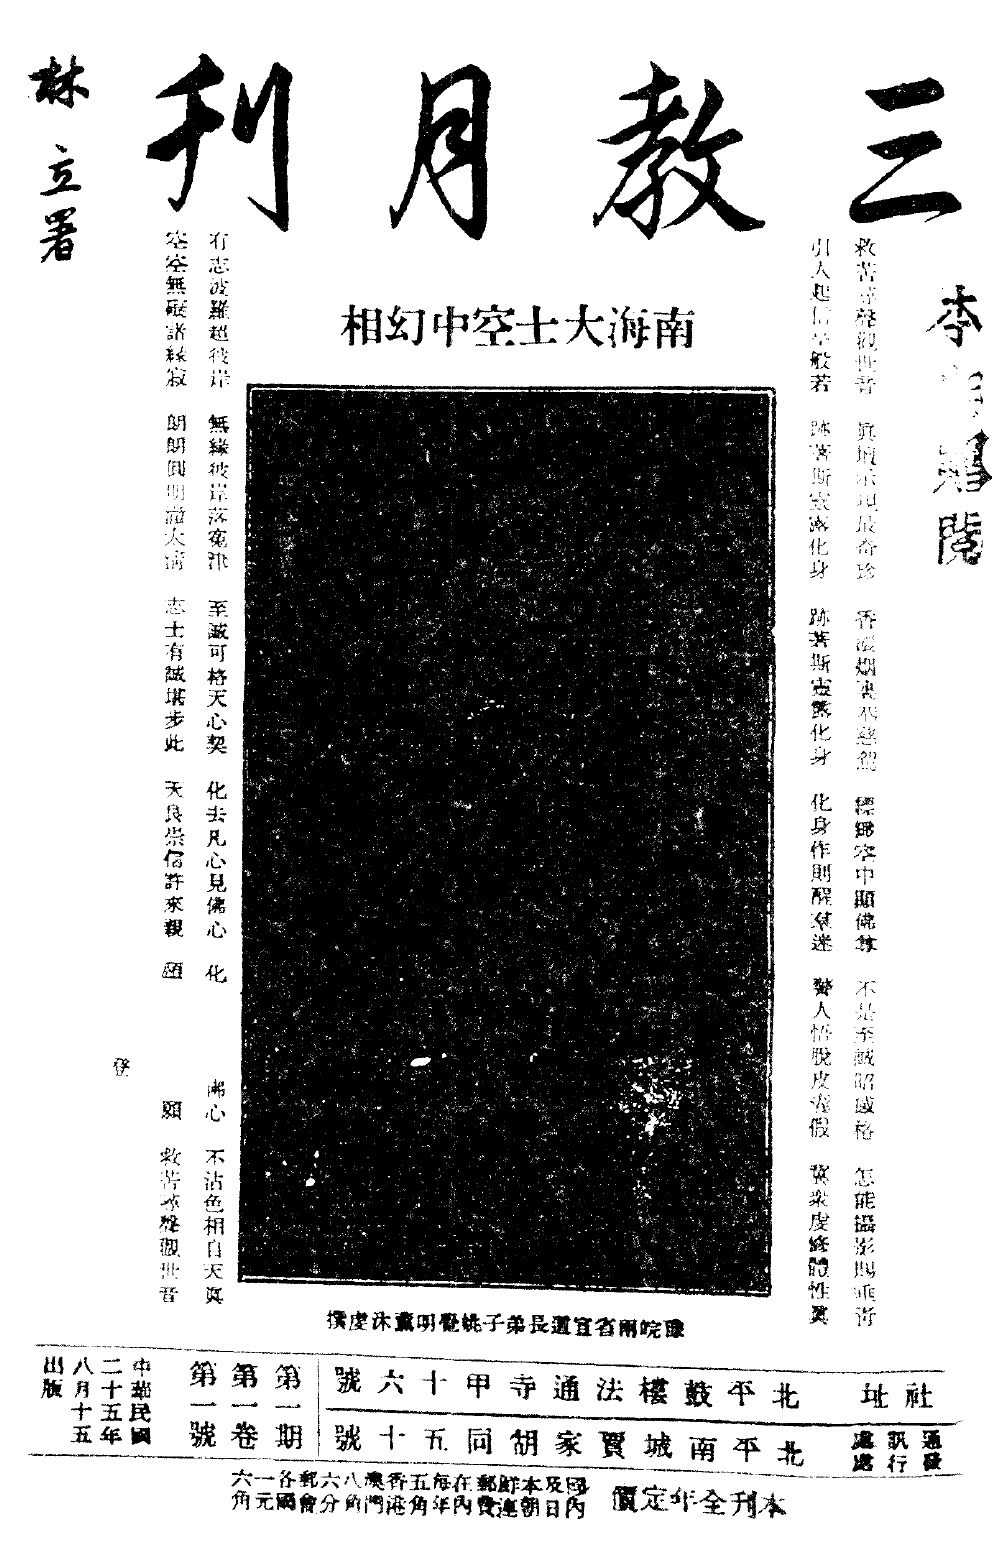 File:Sanjiao yuekan cover.png